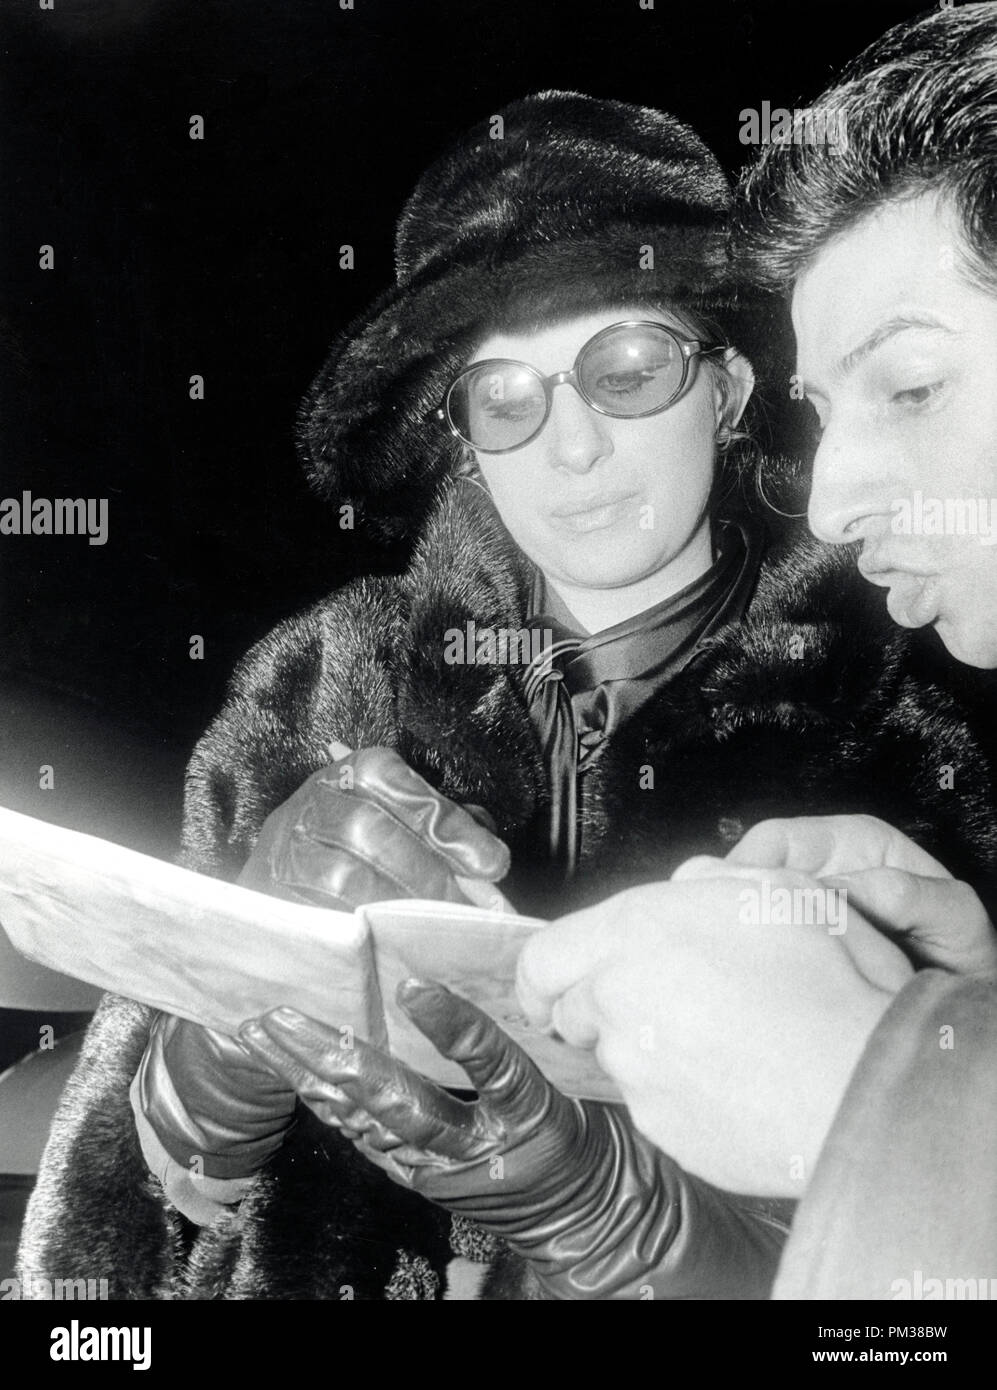 Barbra Streisand Unterzeichnung eines Fan's Autogramm Buch, 1969. Datei Referenz Nr. 1194 008 THA © GFS/Hollywood Archiv - Alle Rechte vorbehalten Stockfoto